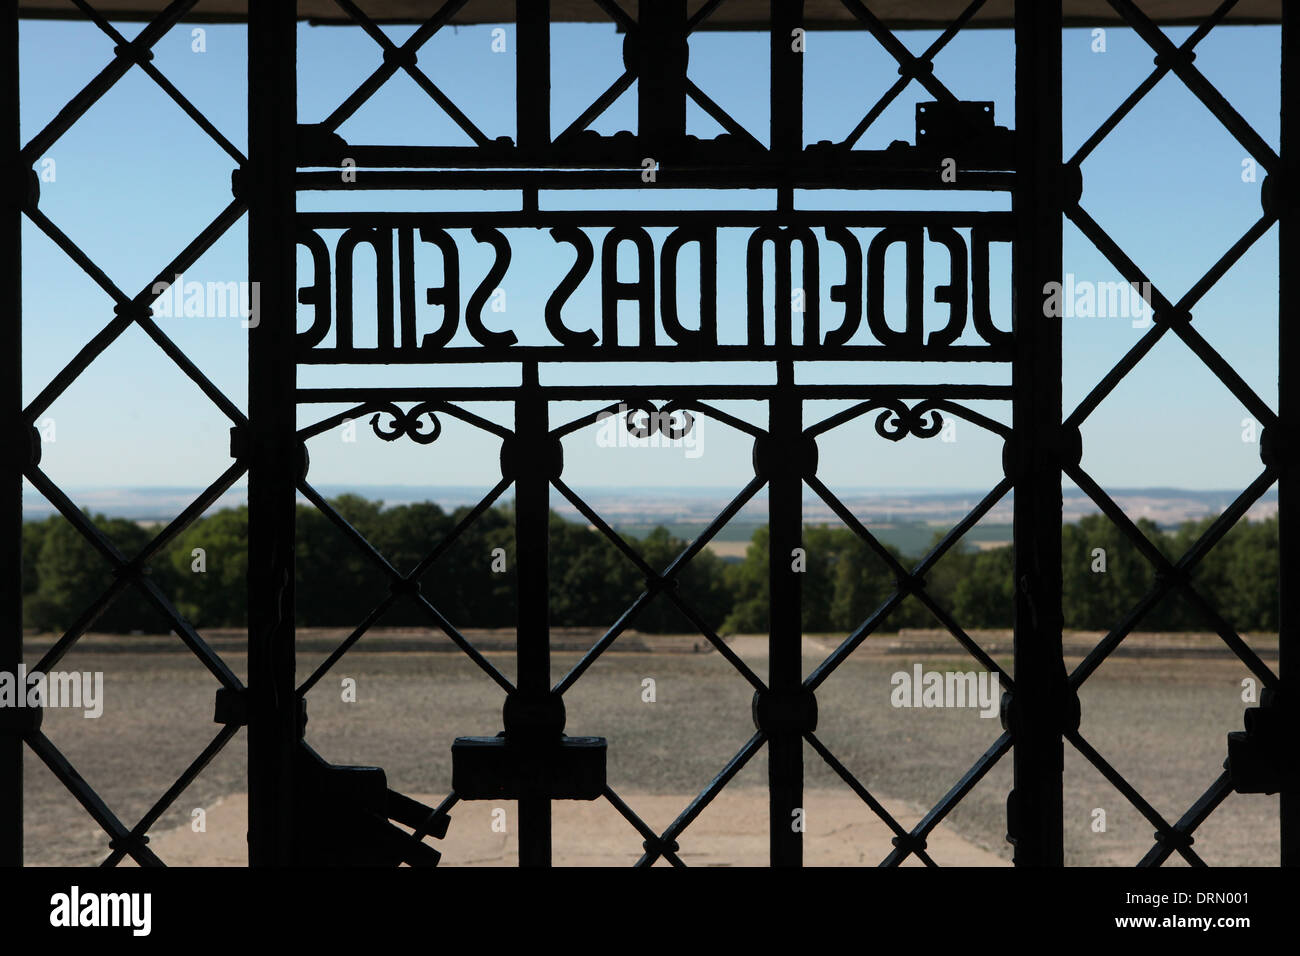 Jedem das Seine. Main gate of Buchenwald concentration camp near Weimar, Germany. Stock Photo